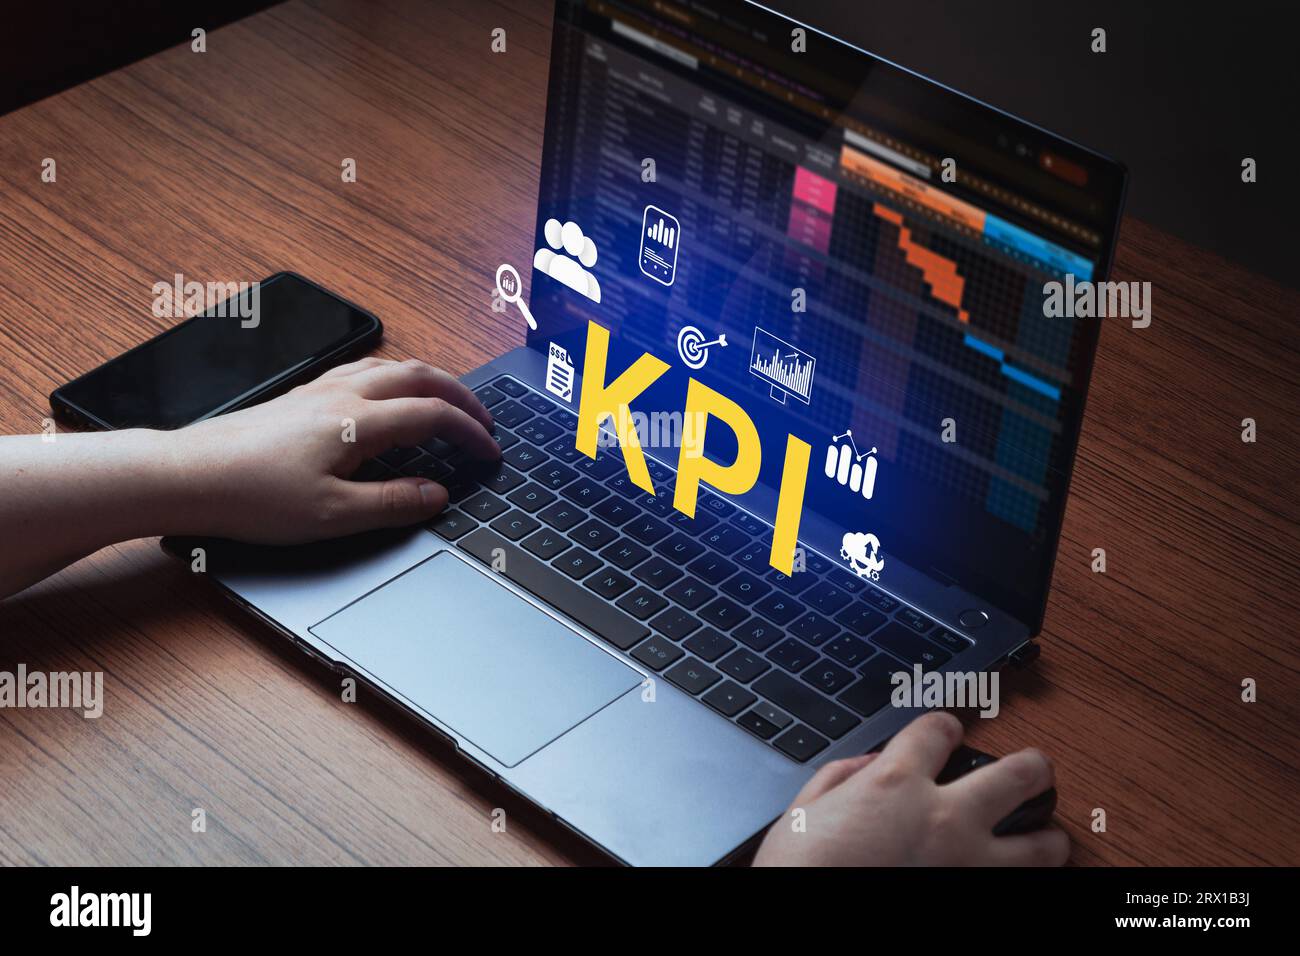 Frau verwendet Laptop mit holografischer KPI-Schnittstelle auf dem Bildschirm. Key Performance Indicator – Technologiekonzept für Unternehmen. Stockfoto